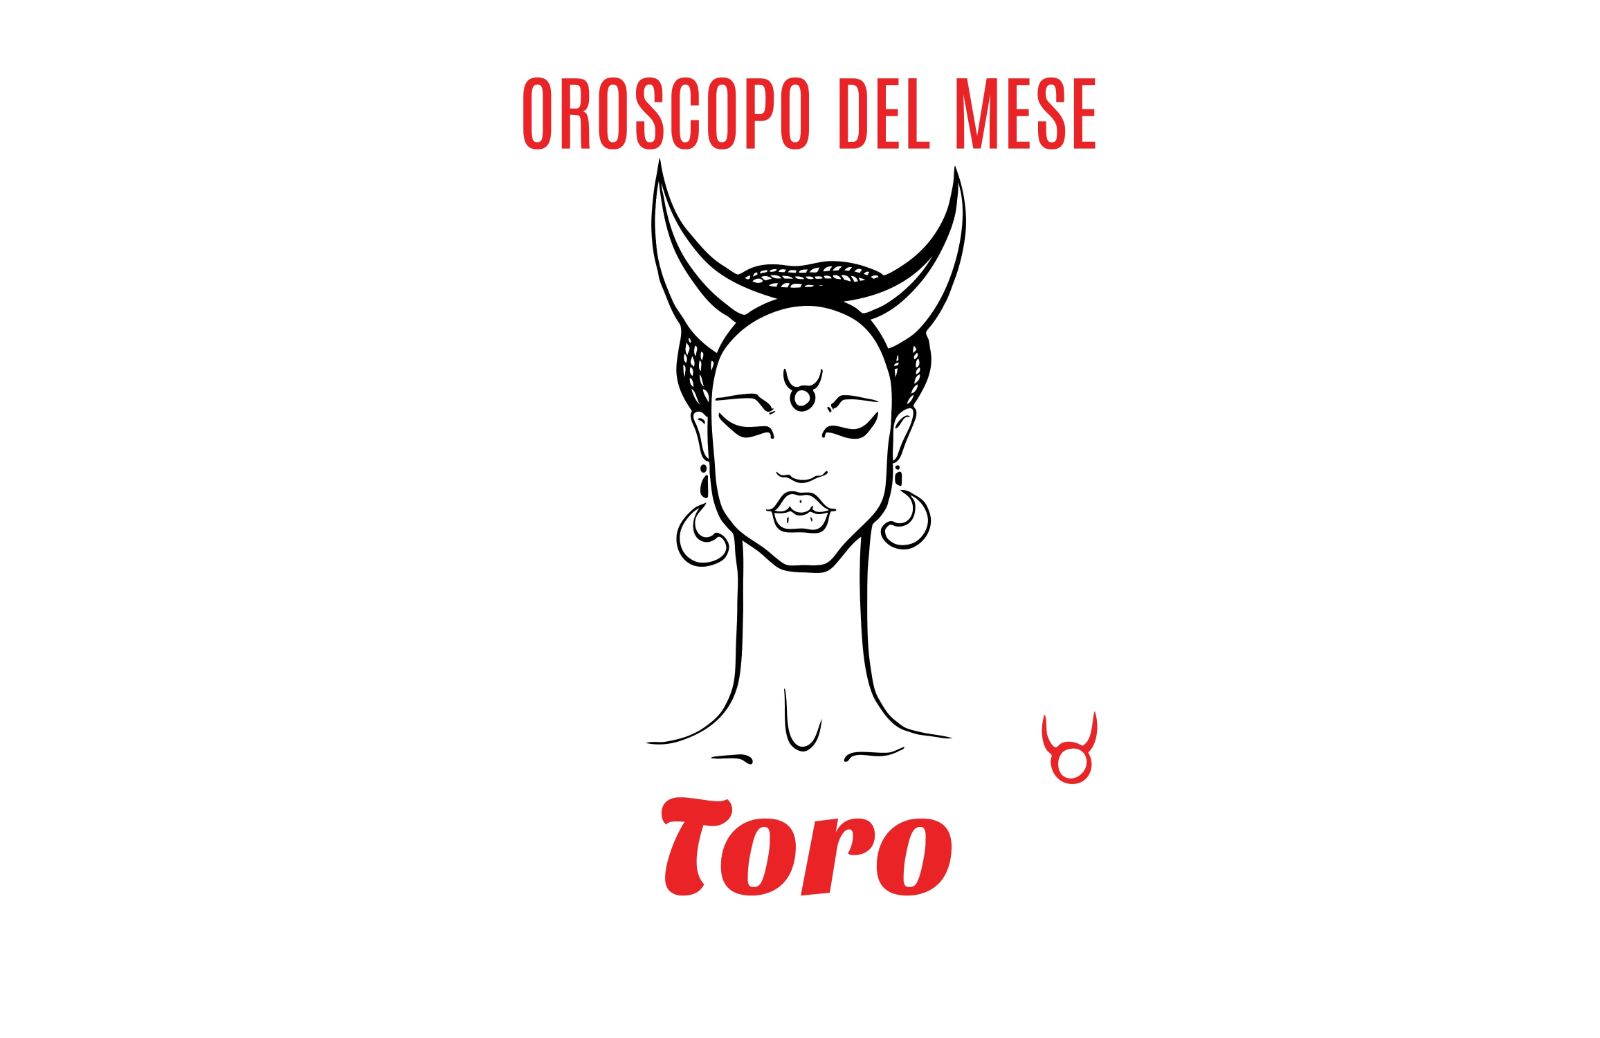 Oroscopo del mese - Toro: novembre 2019